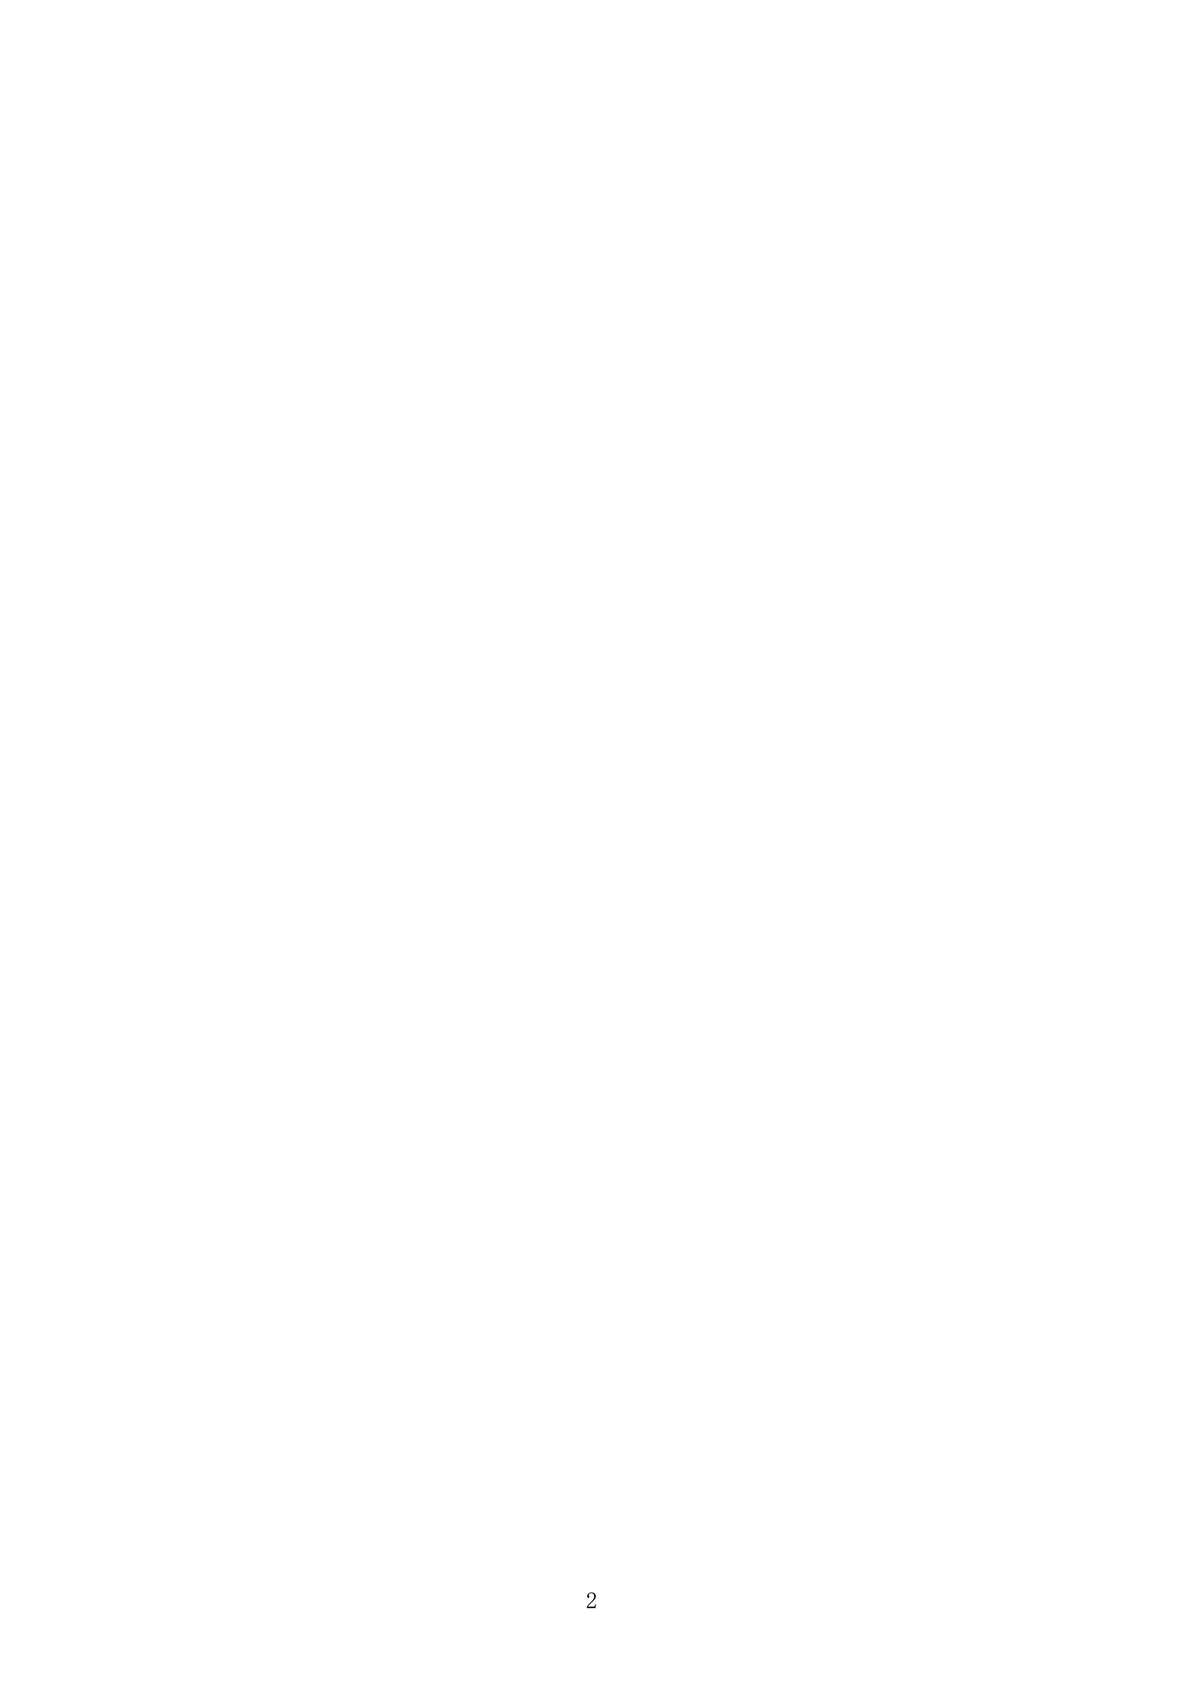 [スタジオBIG-X (ありのひろし)] MOUSOU THEATER 19 (Fate/stay night) [DL版]